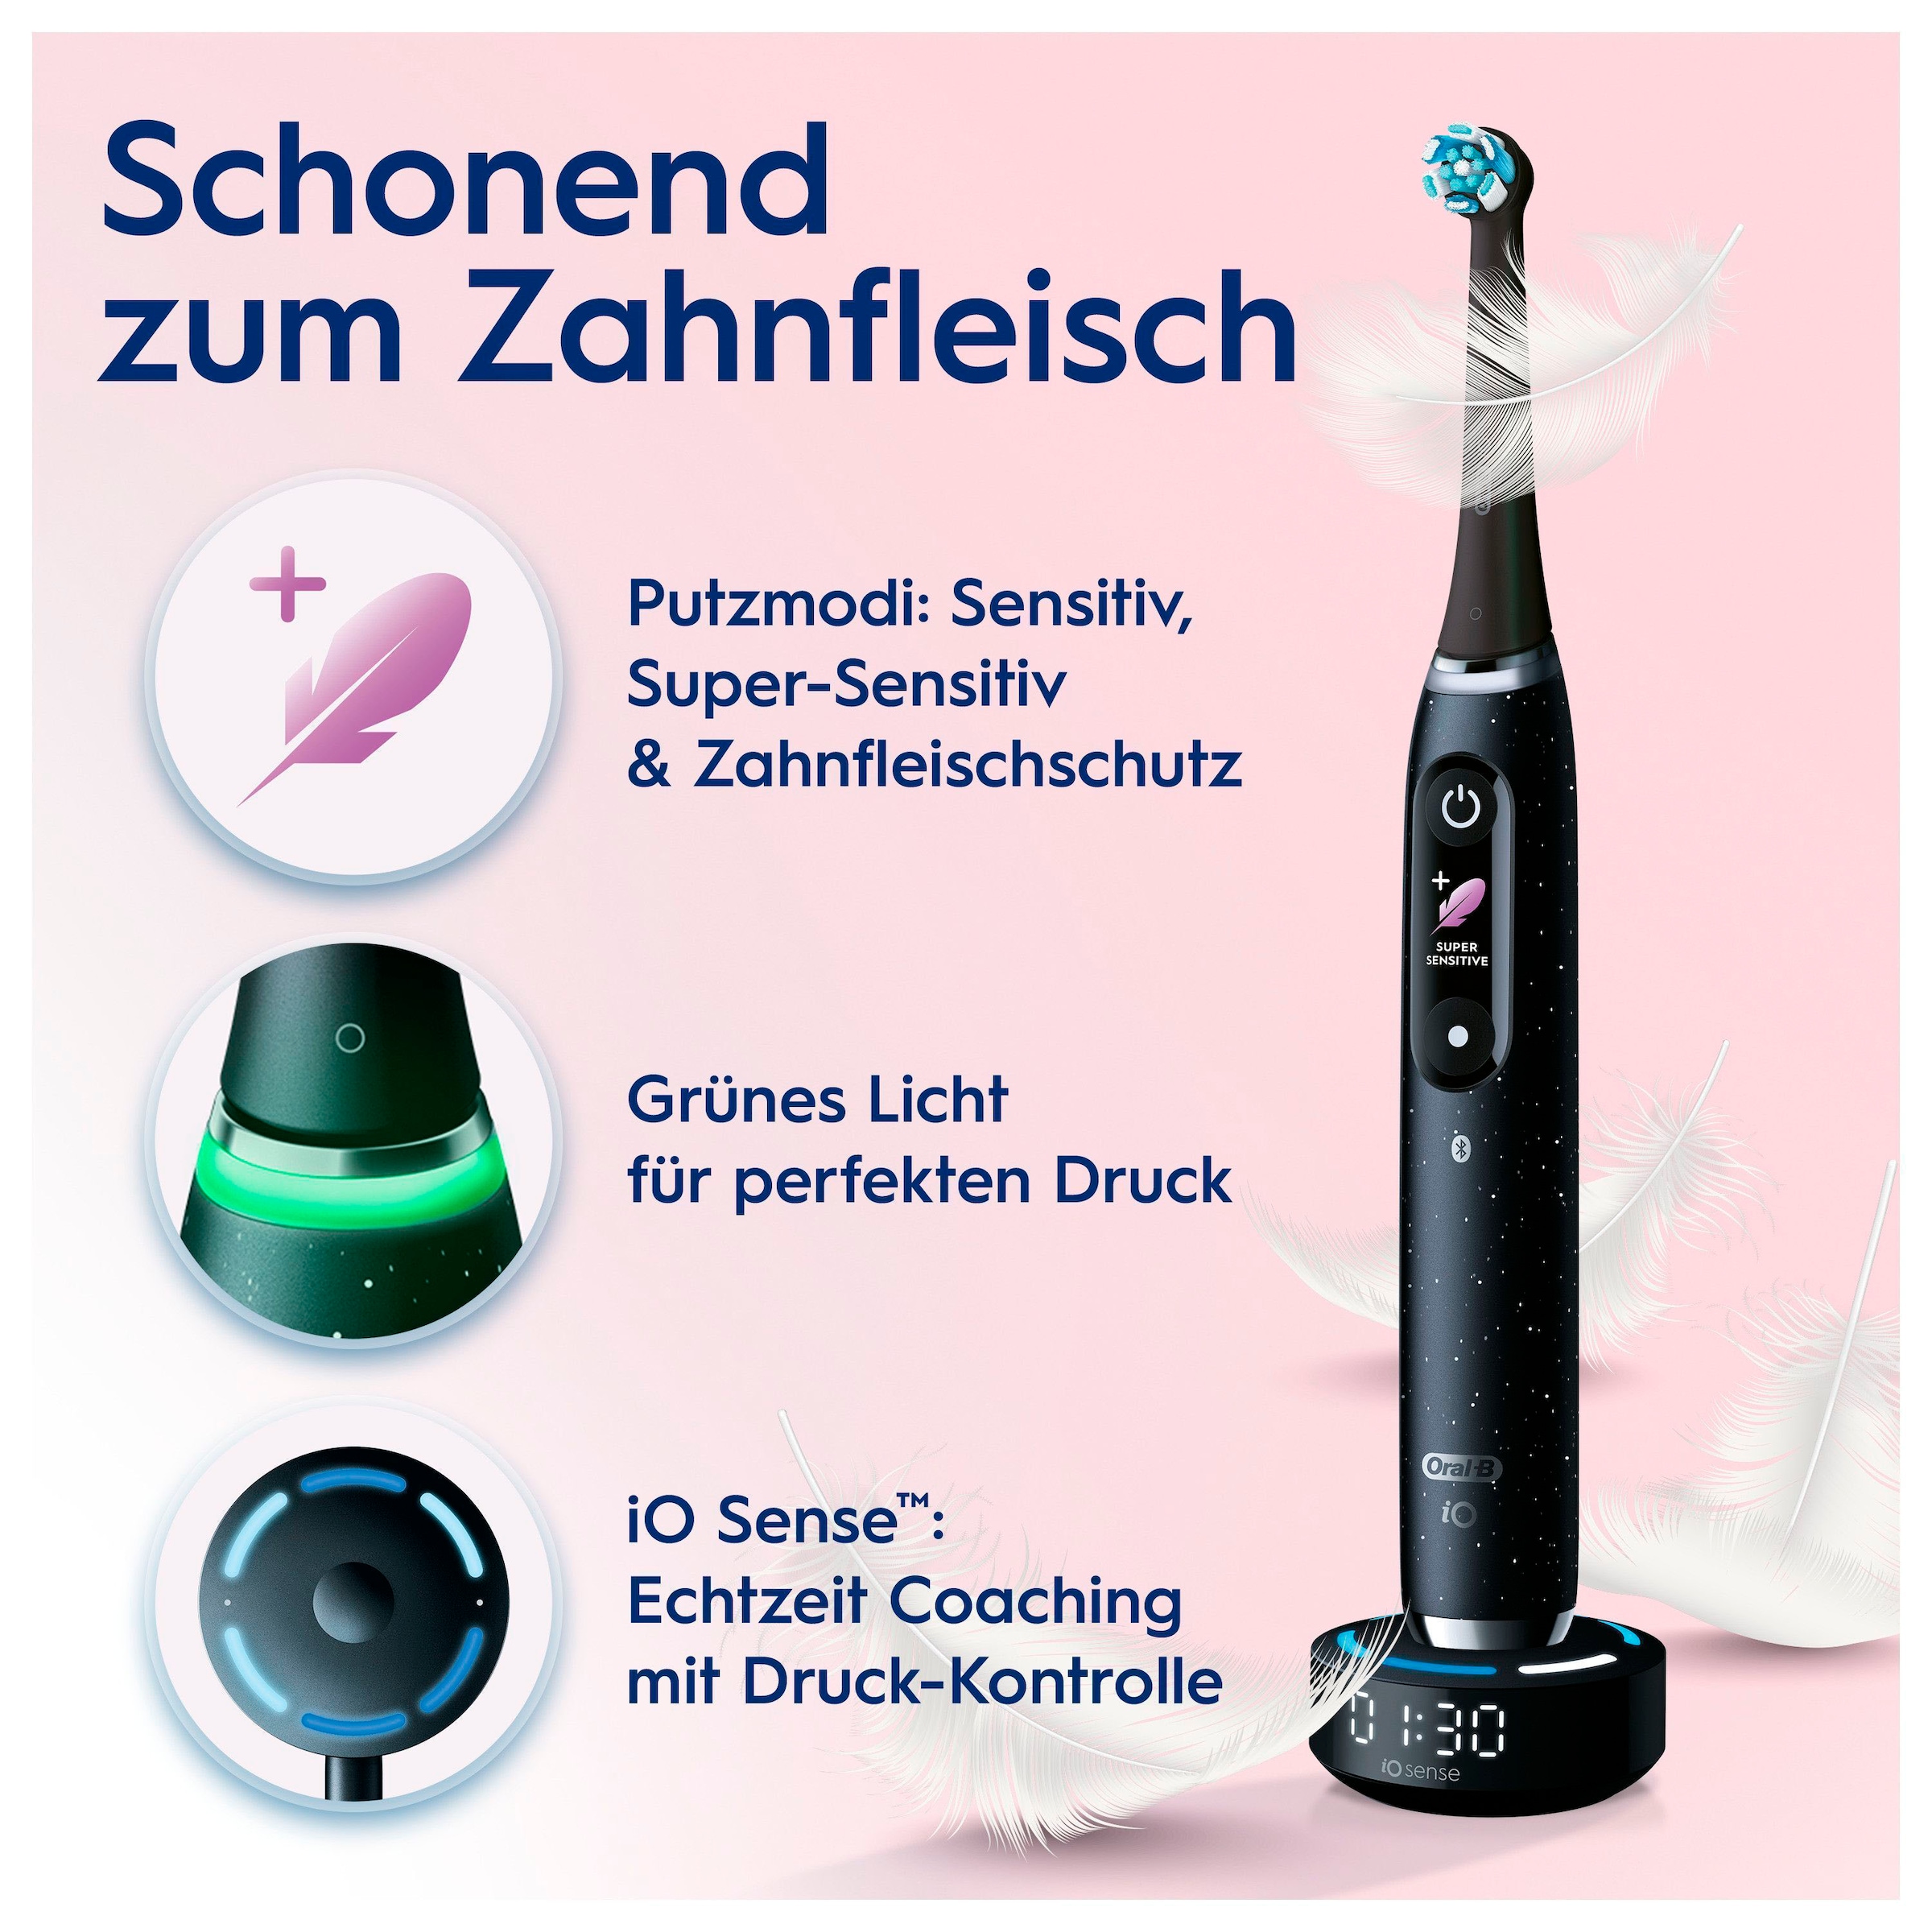 Oral-B Elektrische Zahnbürste »iO Series 10 Luxe Edition«, 1 St. Aufsteckbürsten, Magnet-Technologie